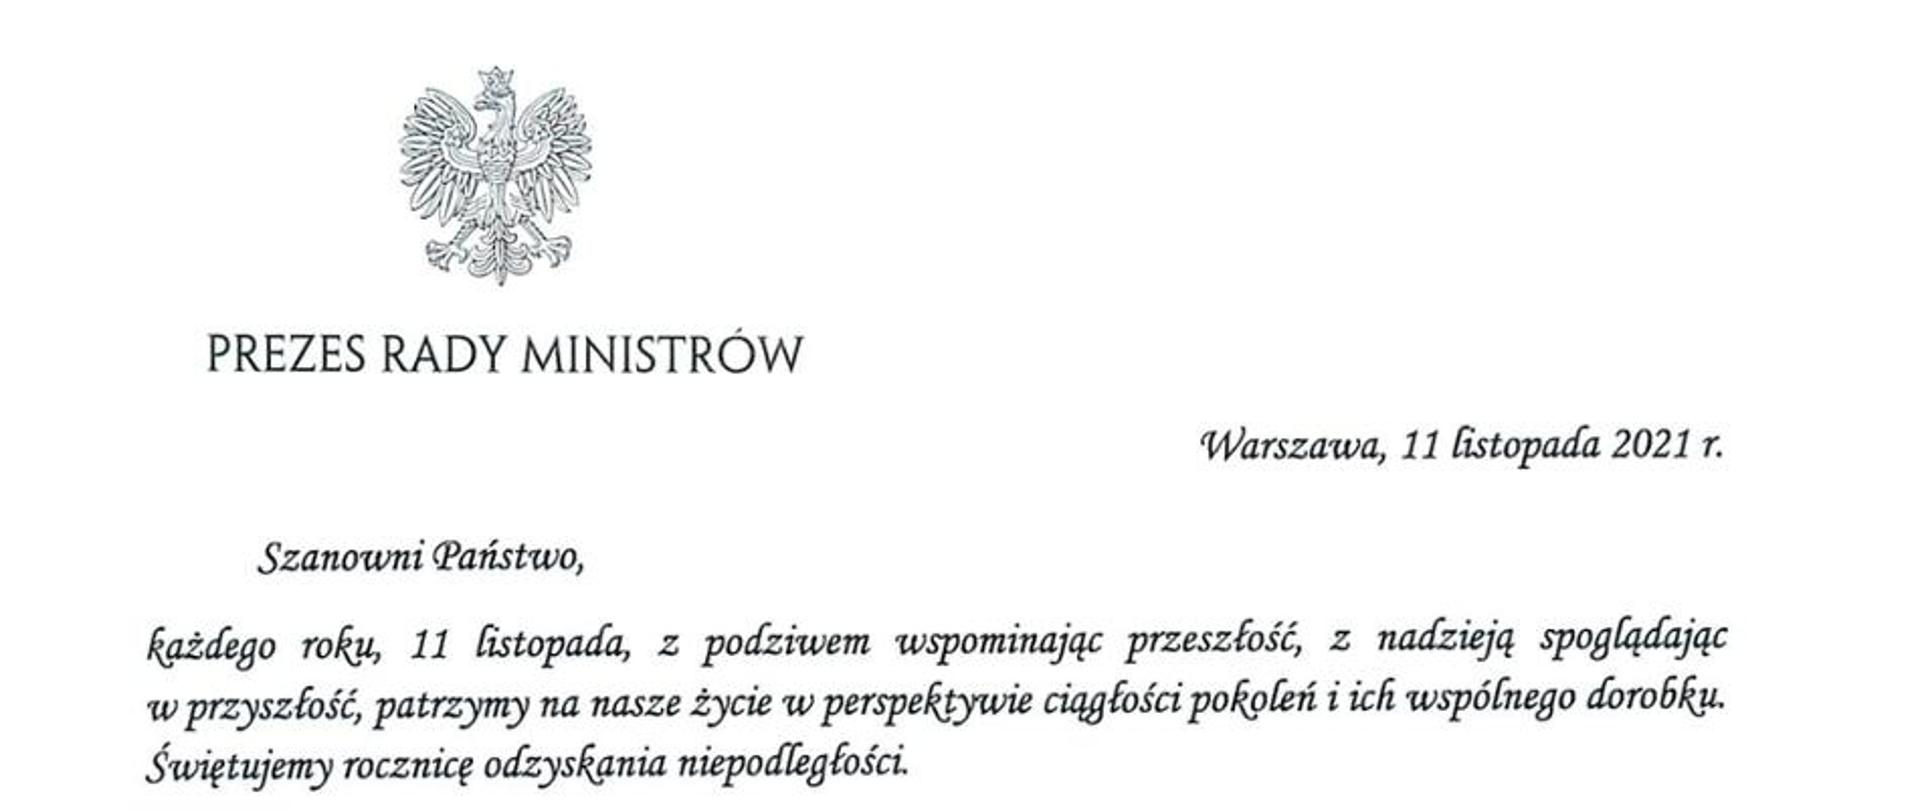 List Pezesa Rady Ministrów do członków korpusu służby cywilnej